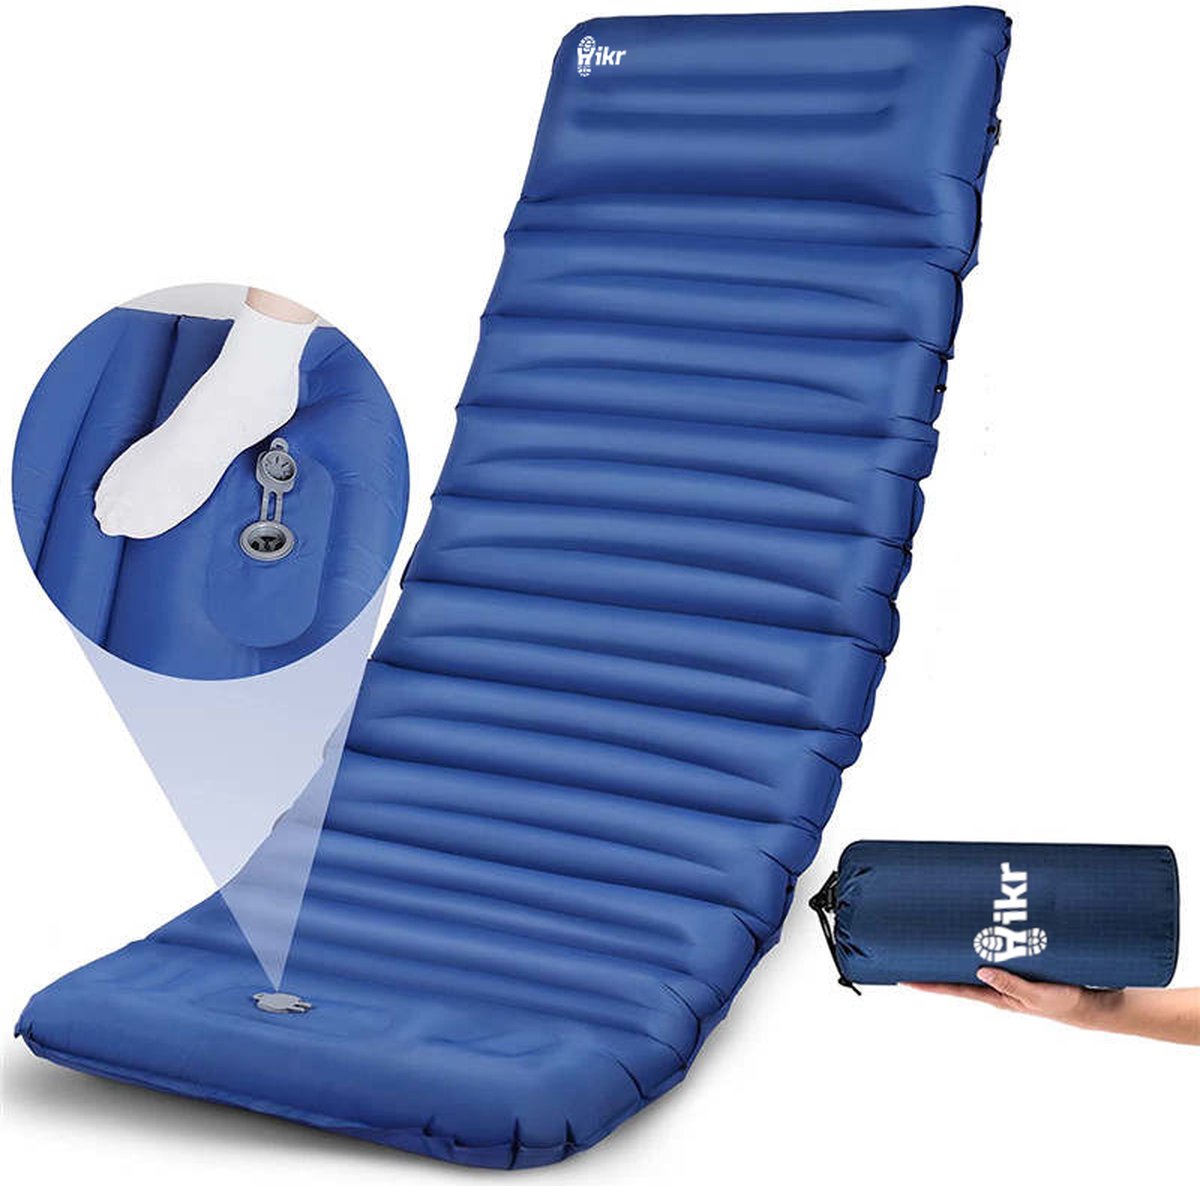 Hikr® Slaapmat 10cm+ dikte - Comfortabel luchtmatras - Zelfopblazend met  voetpomp -... | bol.